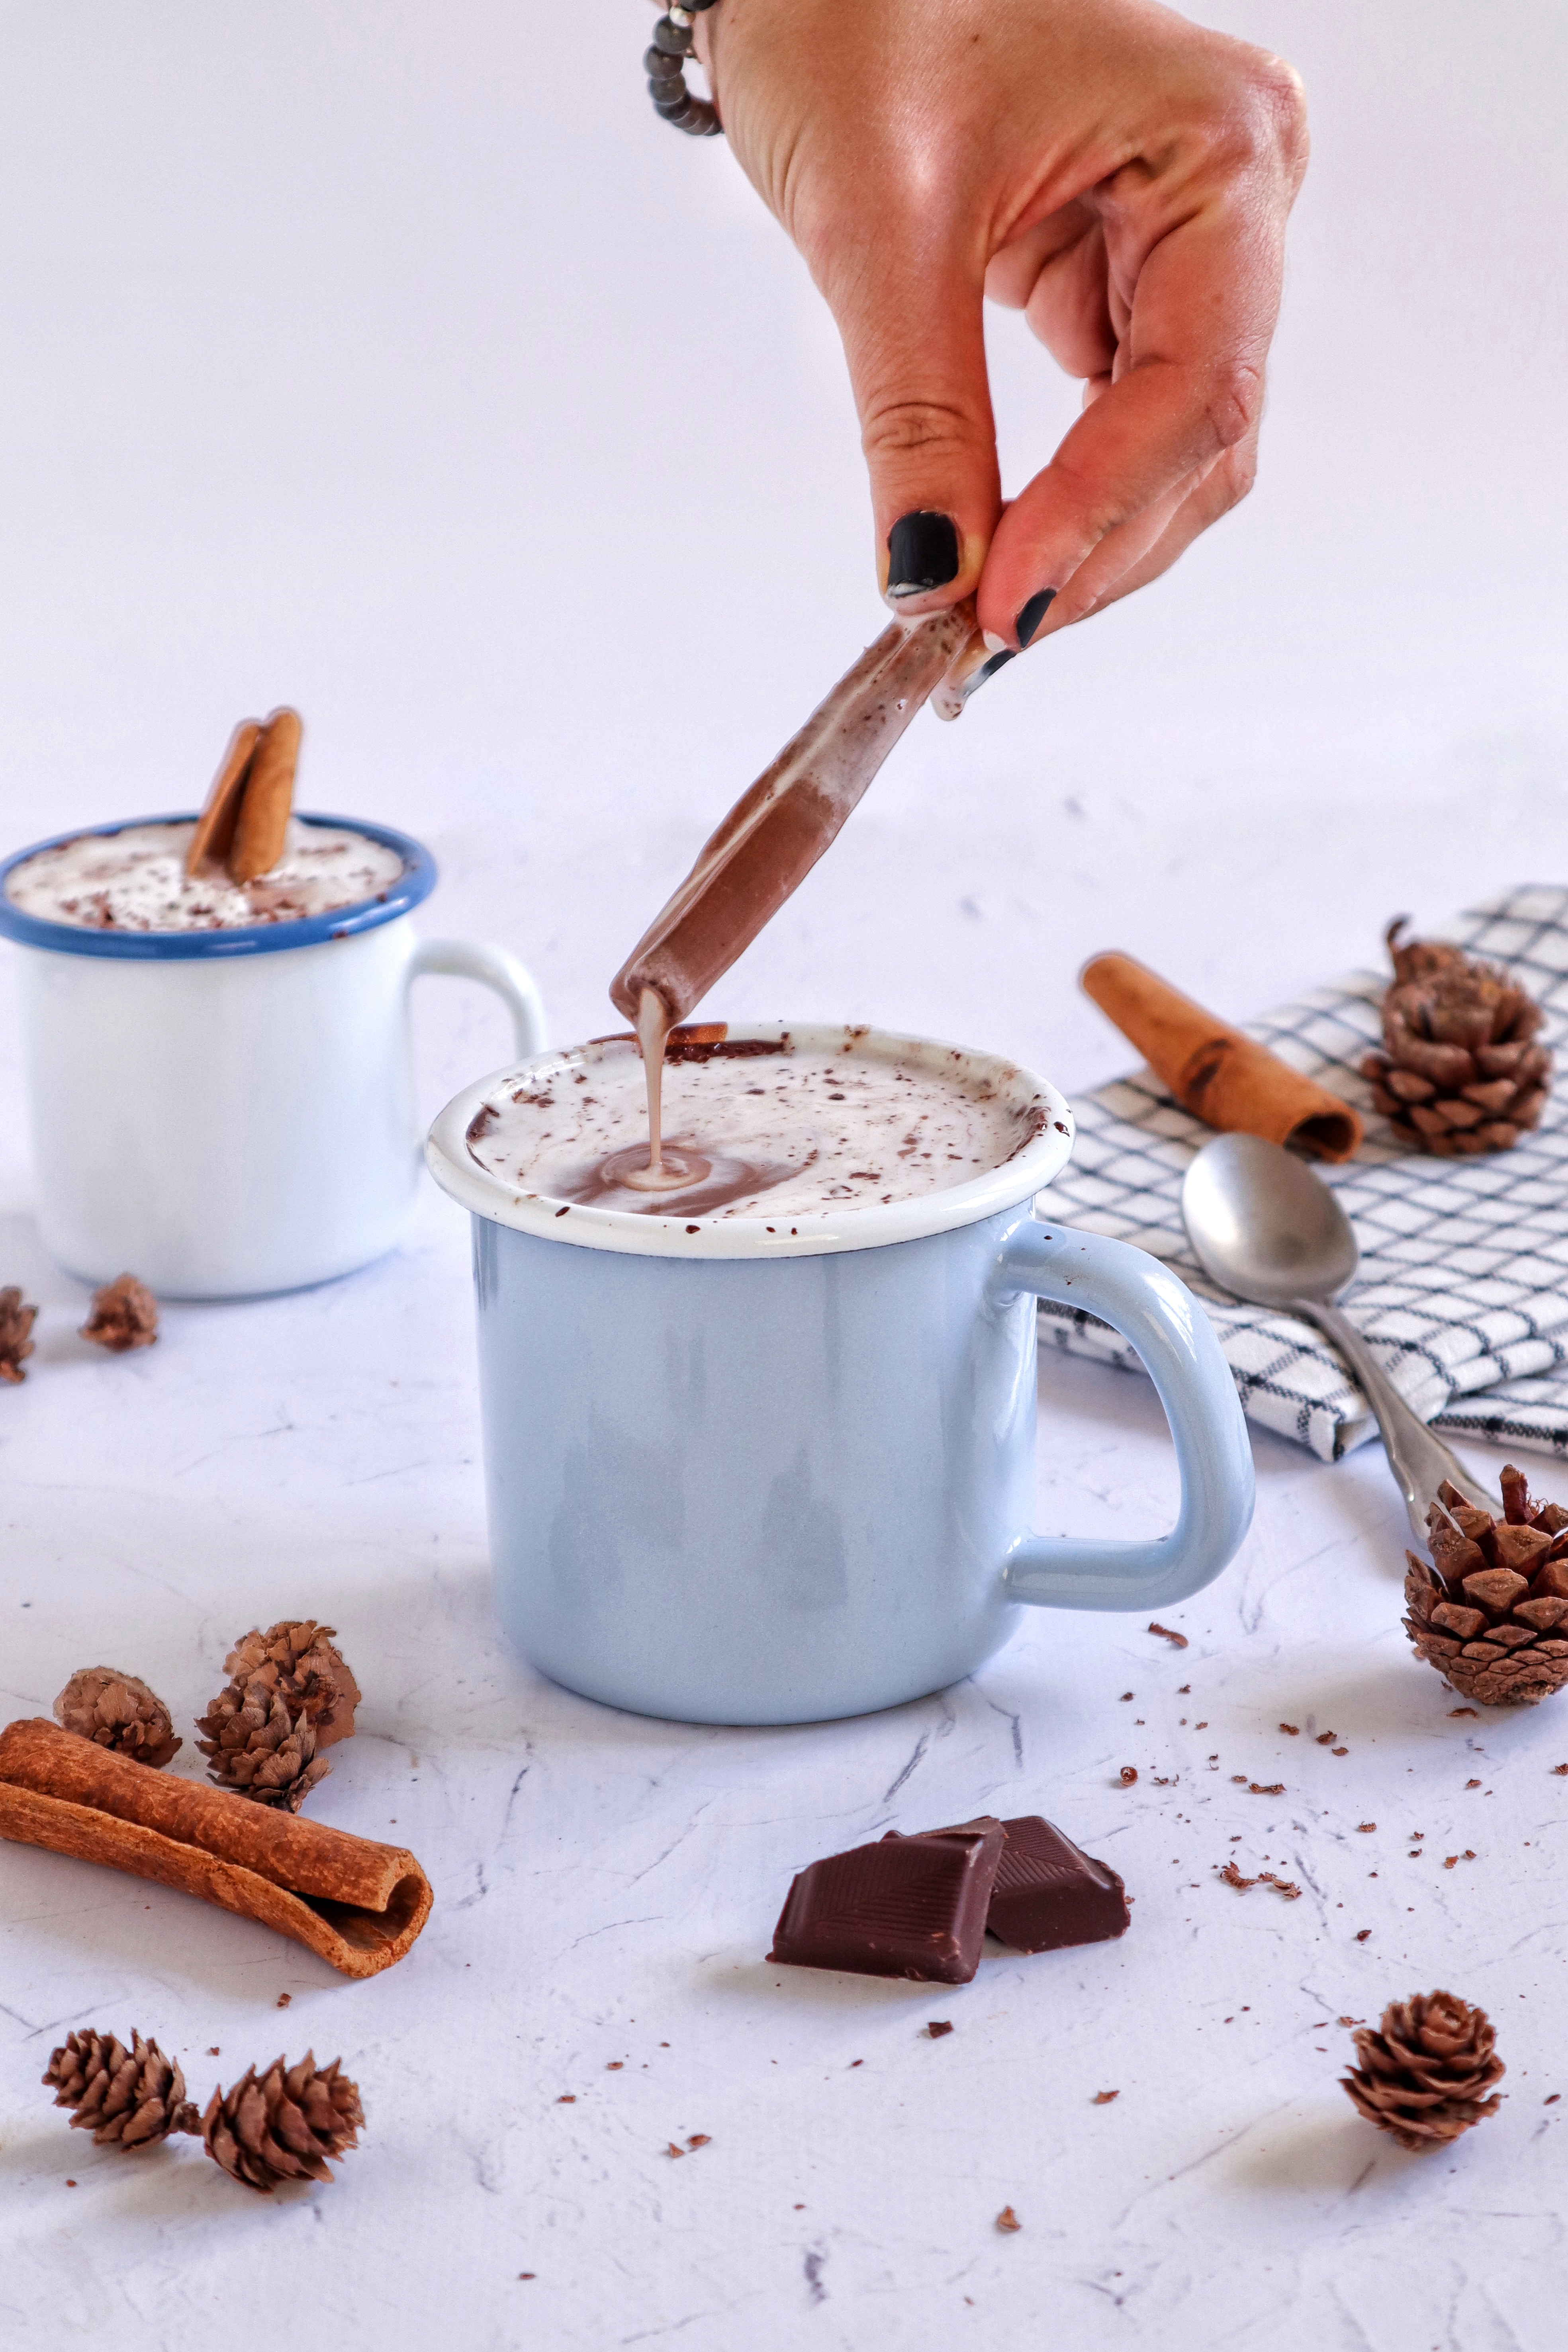 Топлo чоколадo со шлаг од кокос како омилен пијалaк оваа зима!